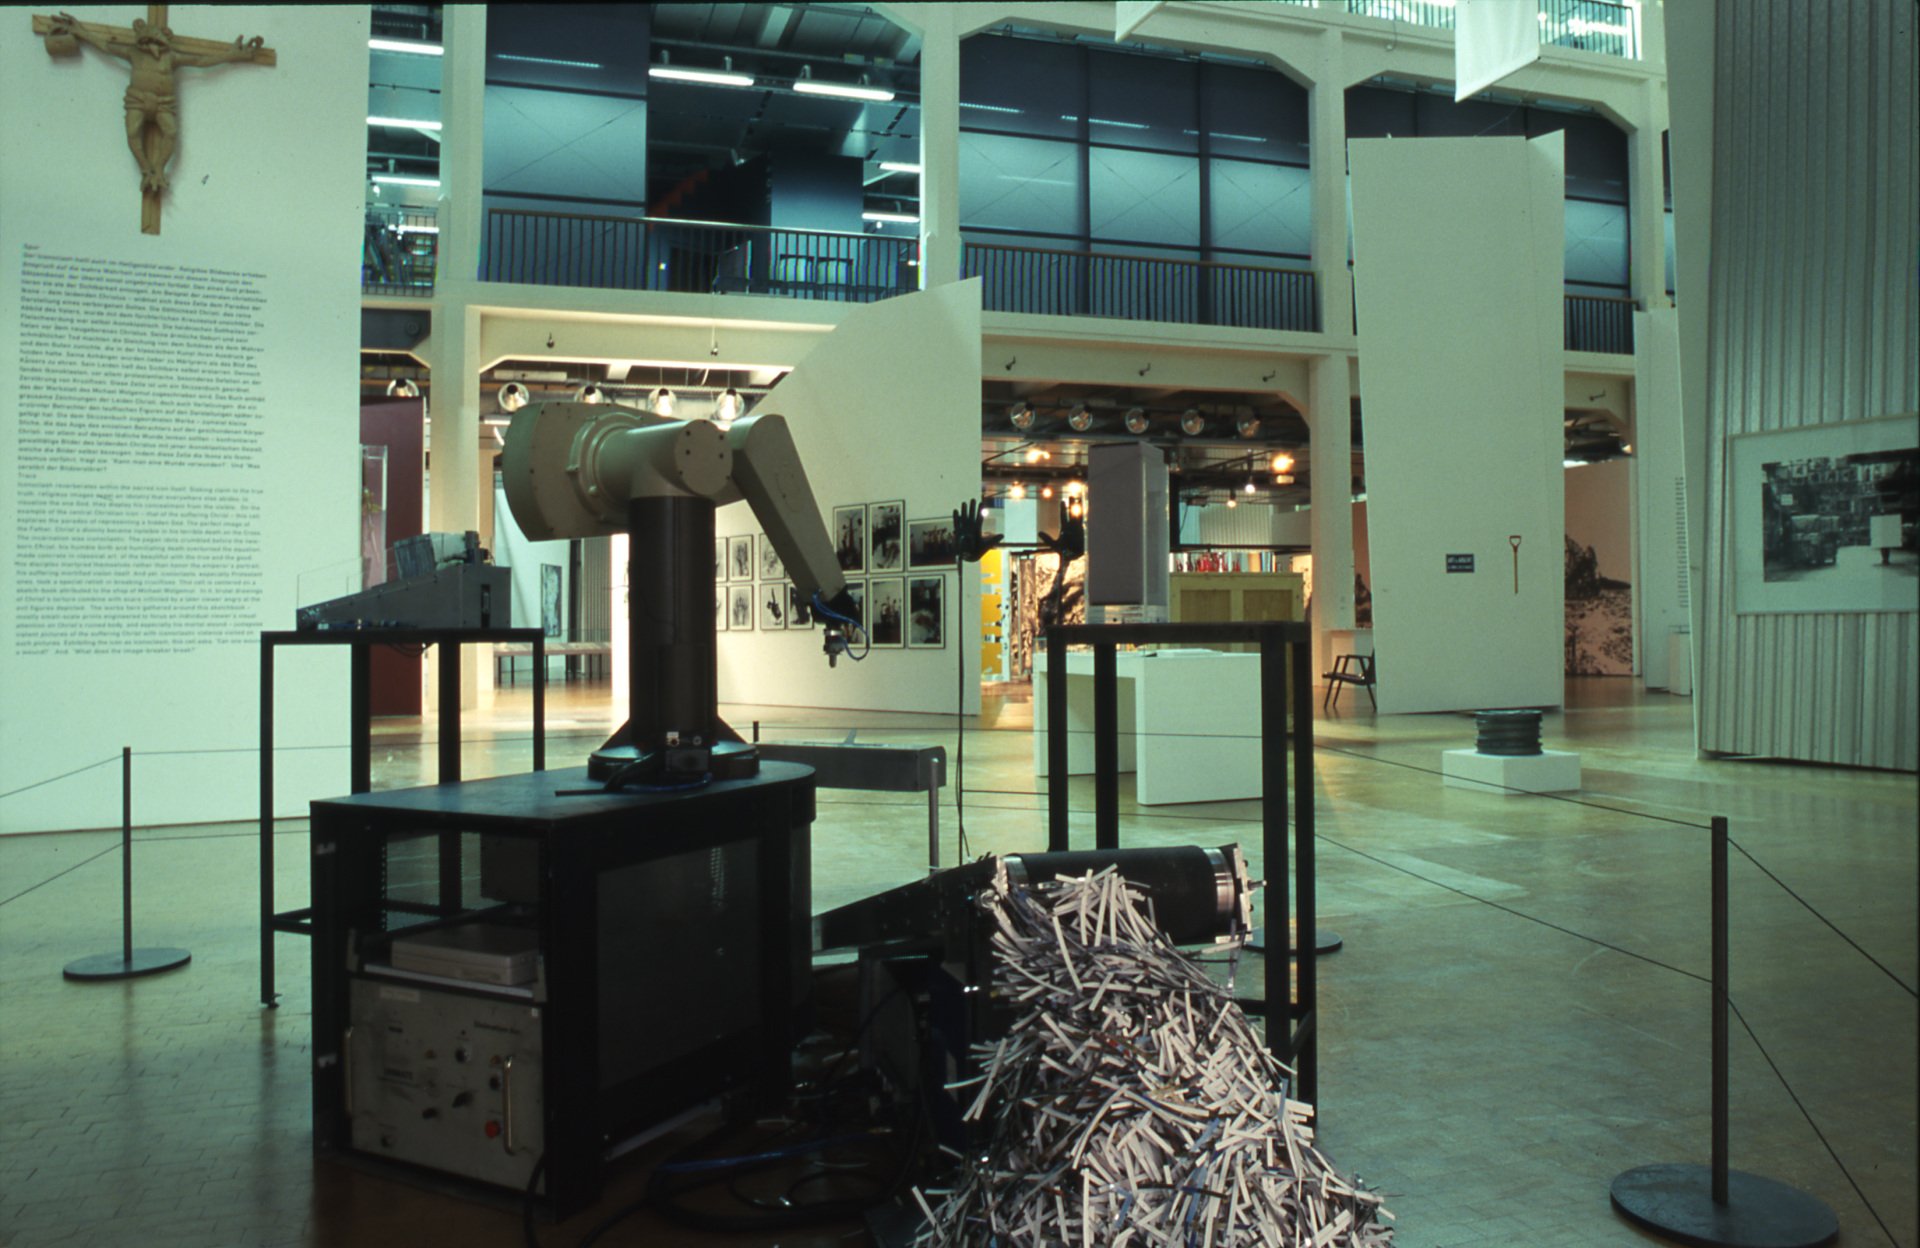  Vista de la instalación, Max Dean, As Yet Untitled, 1992-1995, en Iconoclash, 2002, © ZKM | Karlsruhe, Foto: ONUK 